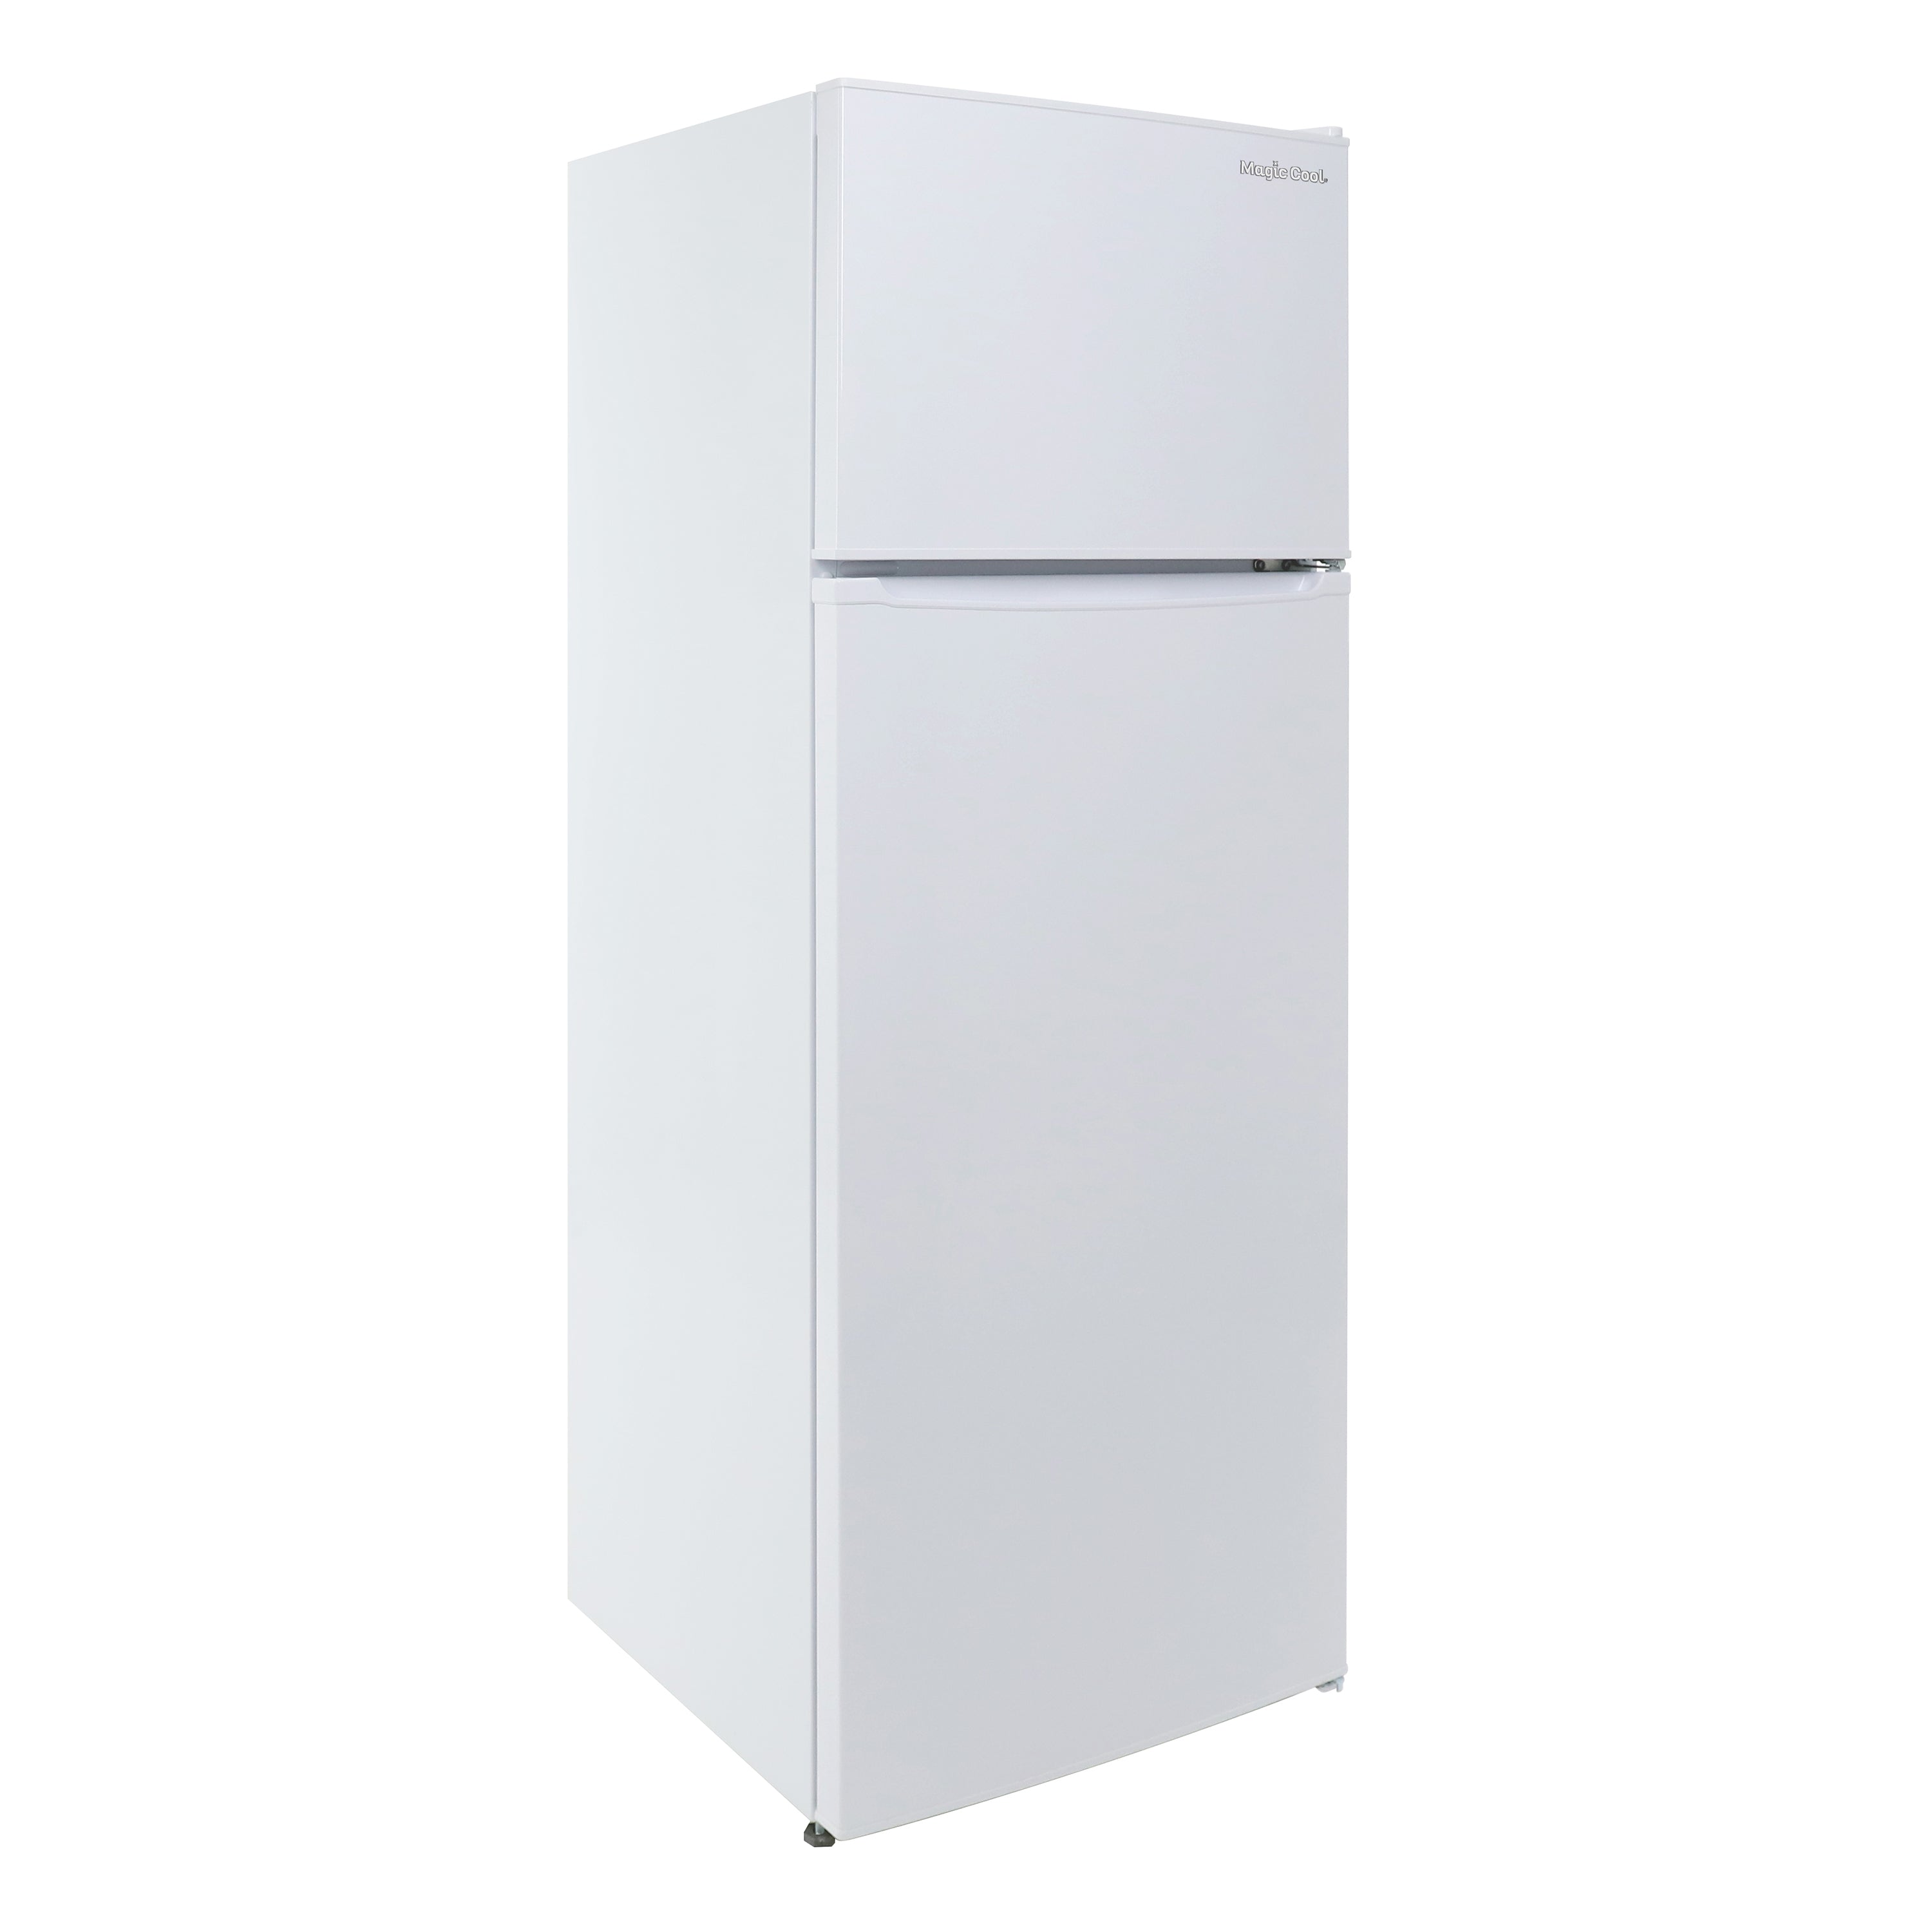 Magic Cool - MCR74V0W, Magic Cool 7.4 cu. ft. Reach-In Refrigerator, in White